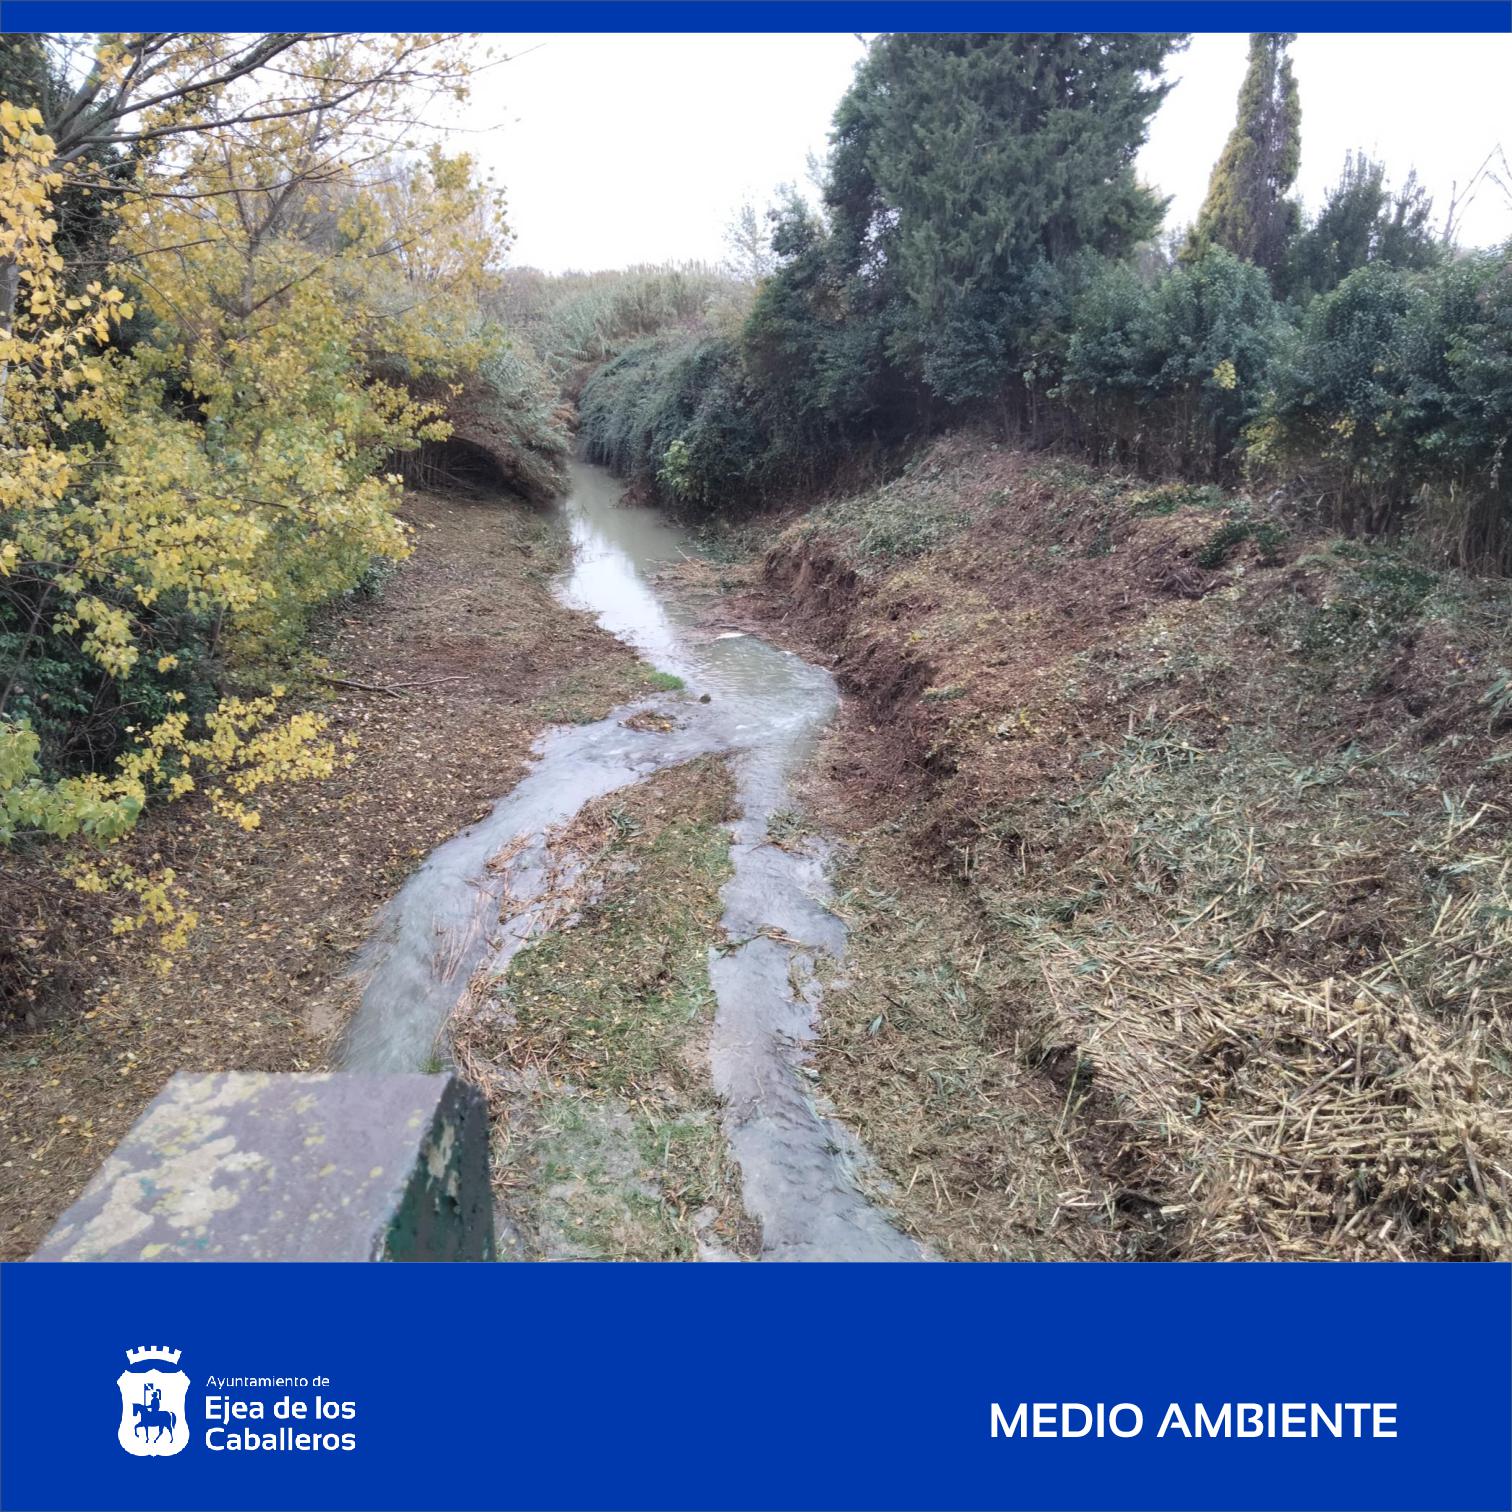 En este momento estás viendo Finalizadas varias actuaciones de limpieza en los ríos Arba de Biel y de Luesia a su paso por el casco urbano de Ejea